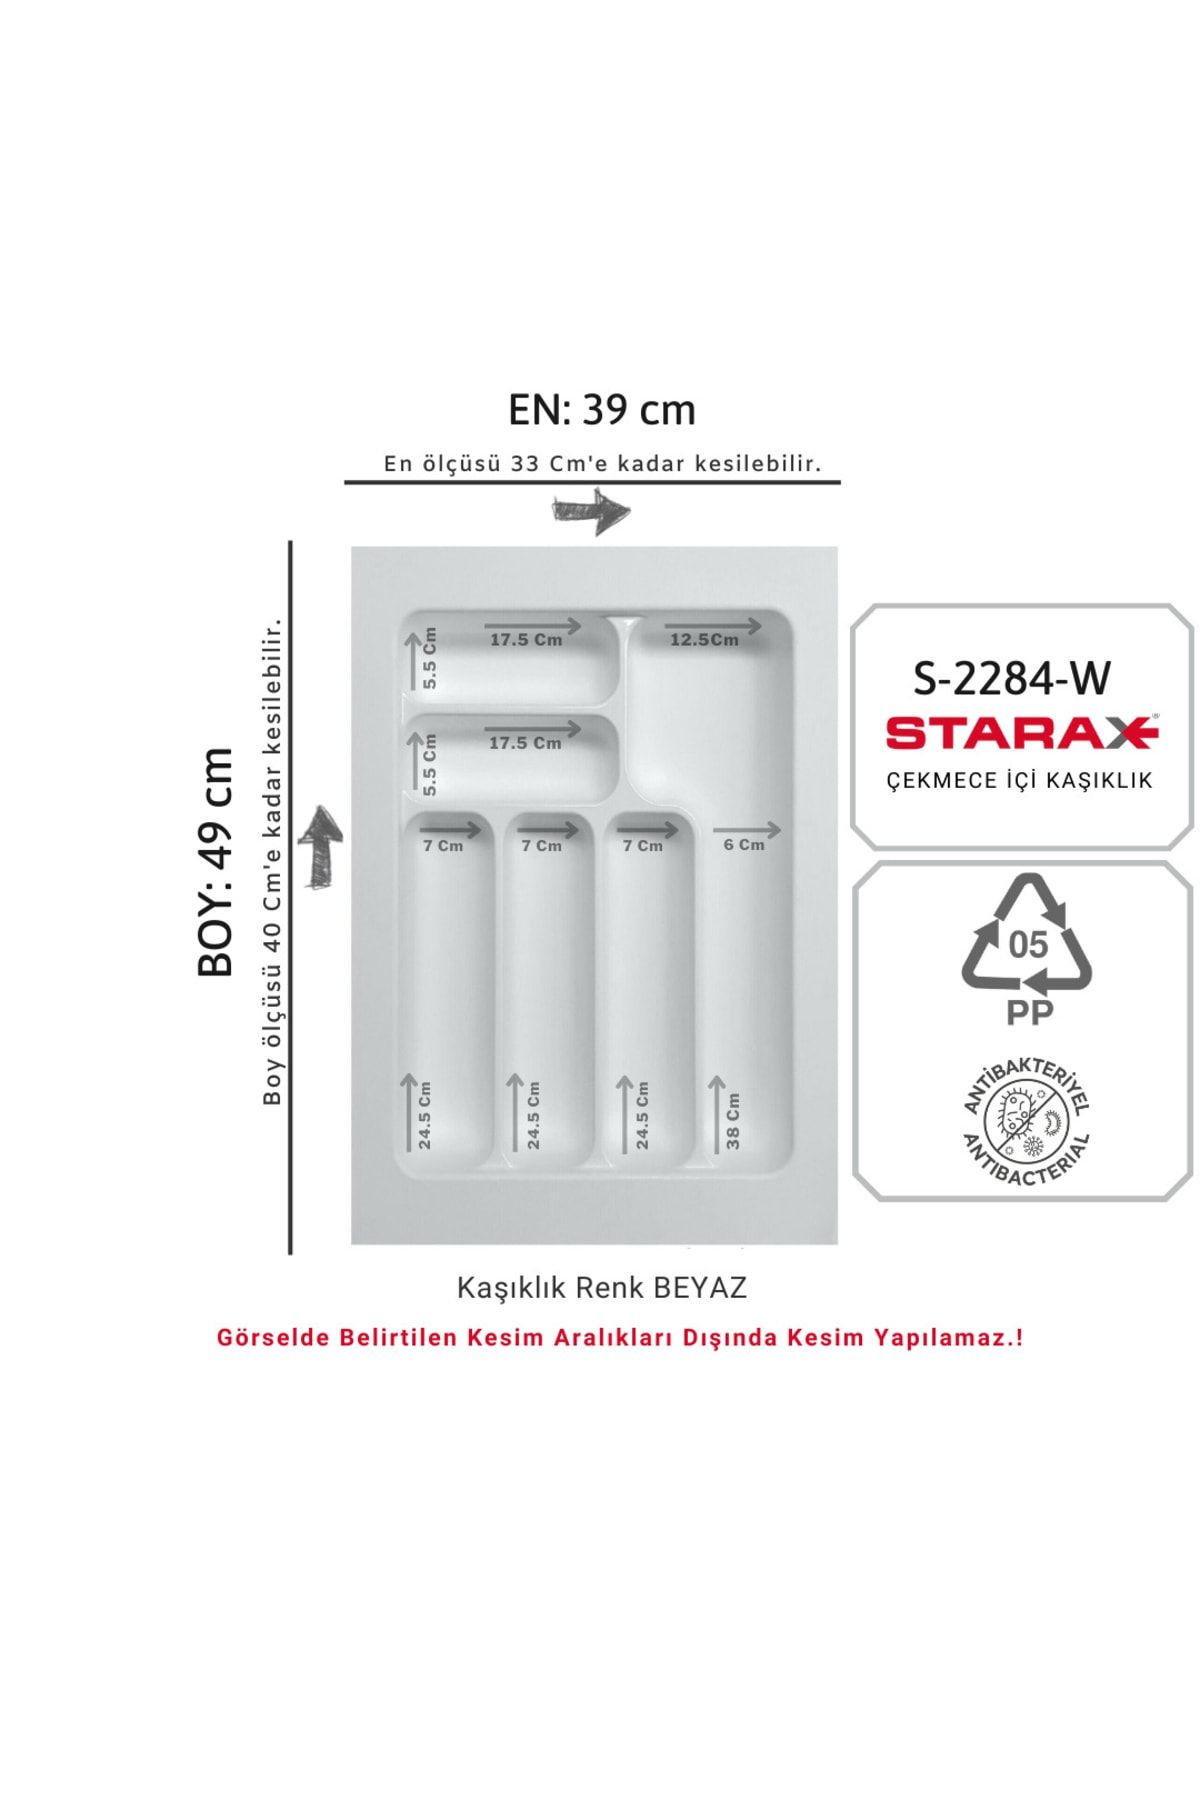 Starax S-2284-w Çekmece Içi Plastik Kaşıklık Beyaz En:39-33 D:49-40 Cm Arası Kesilir 6 Göz